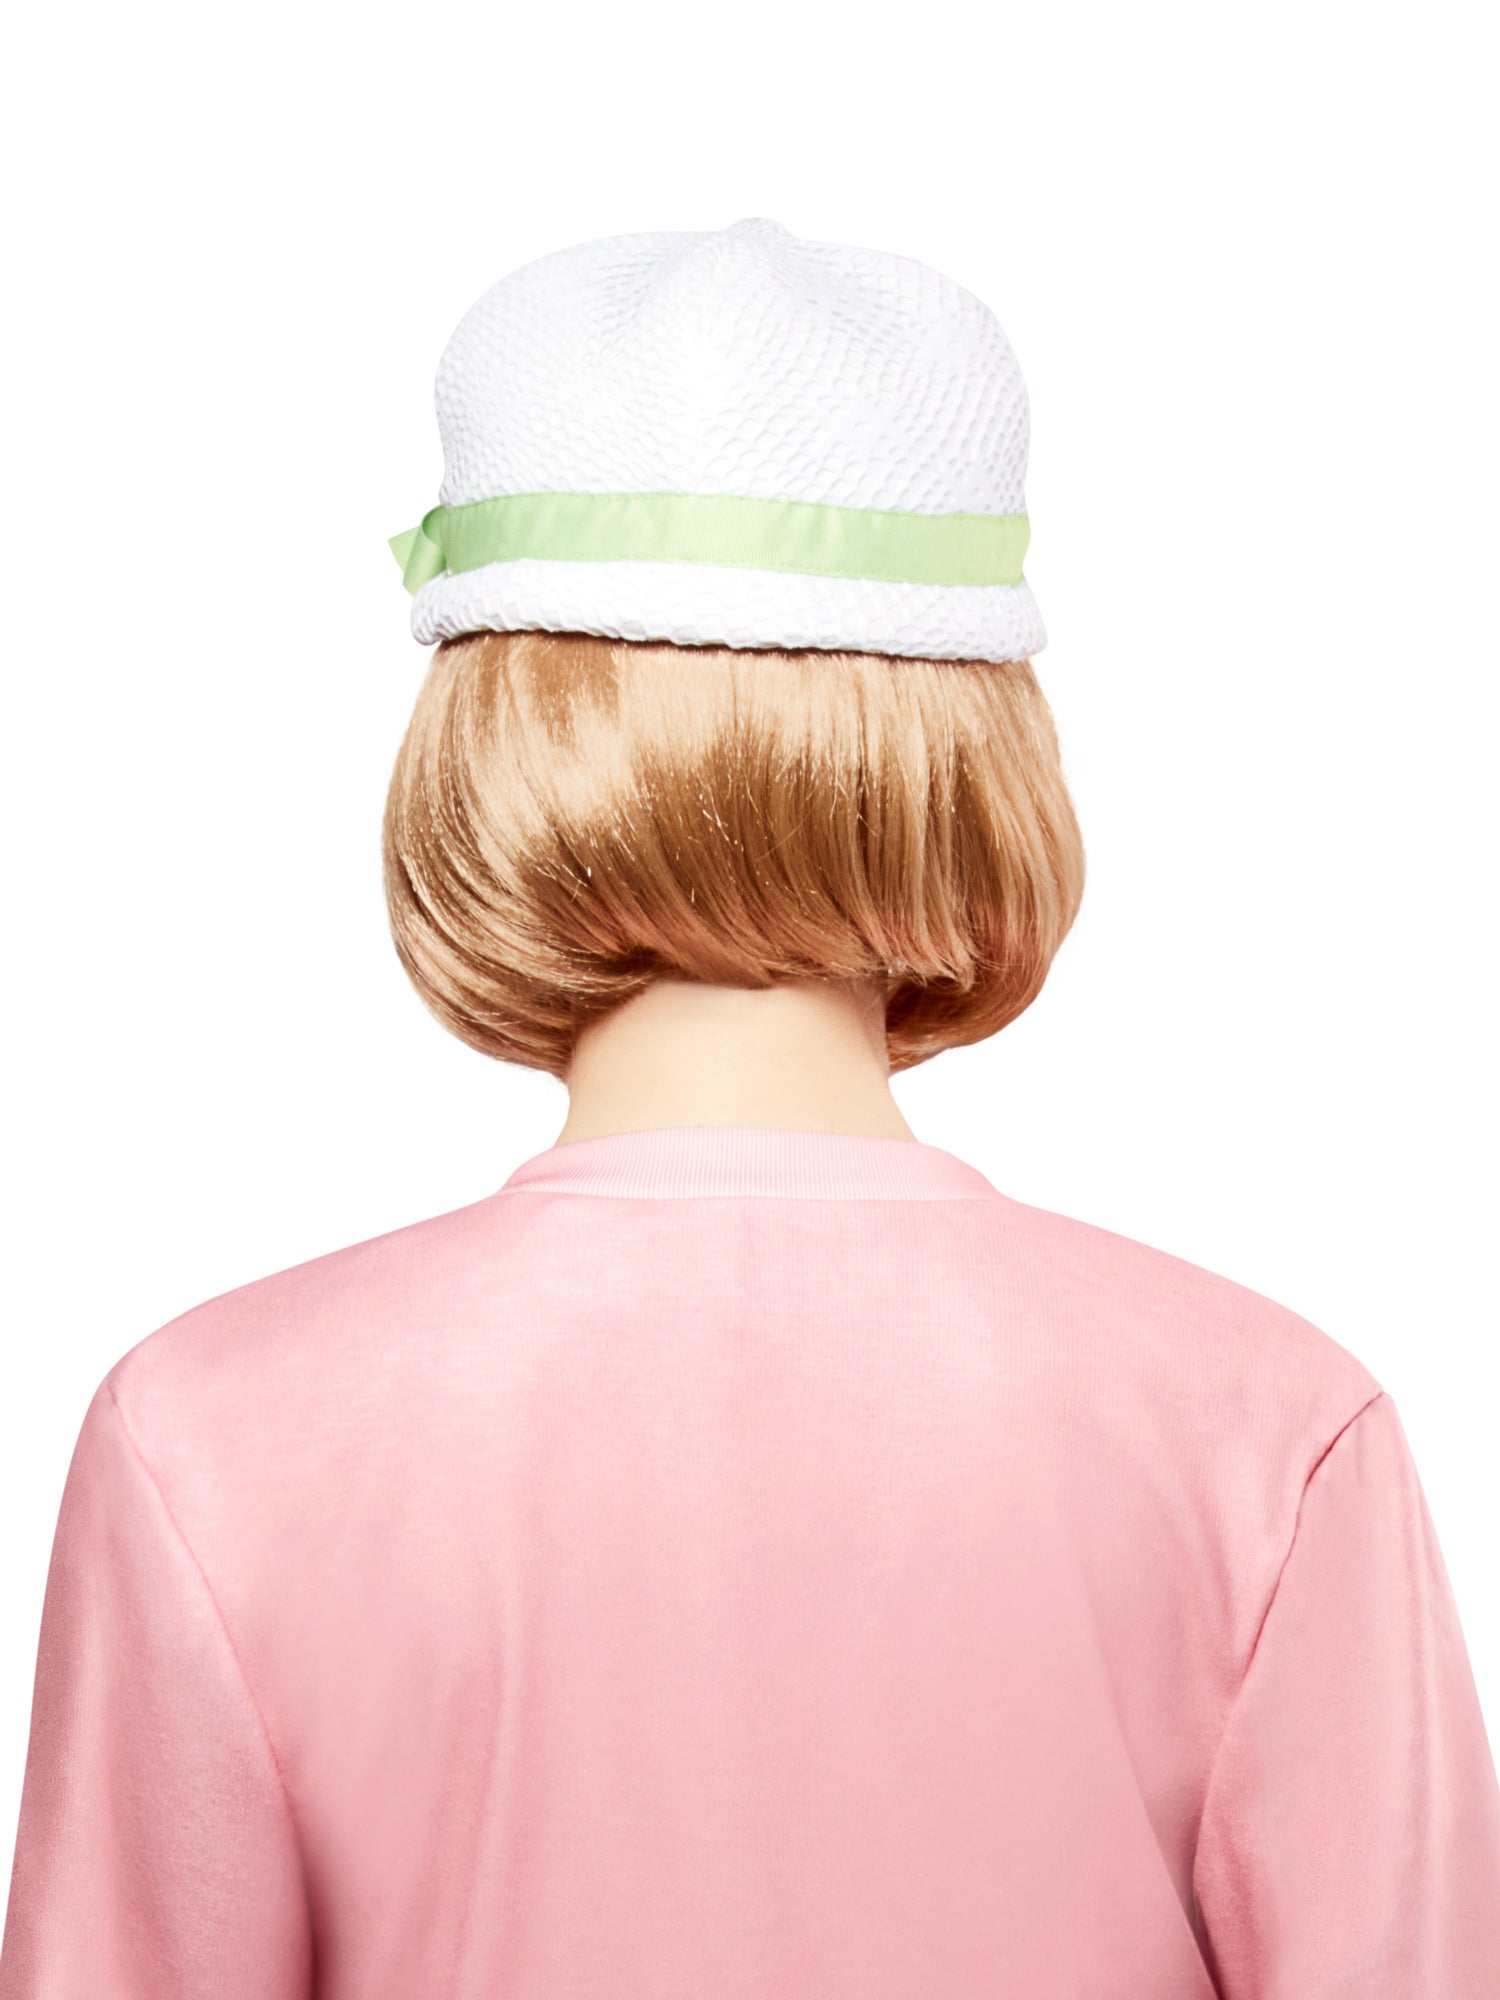 Women's American Girl Kit Kittredge Blonde Bob Wig - costumes.com